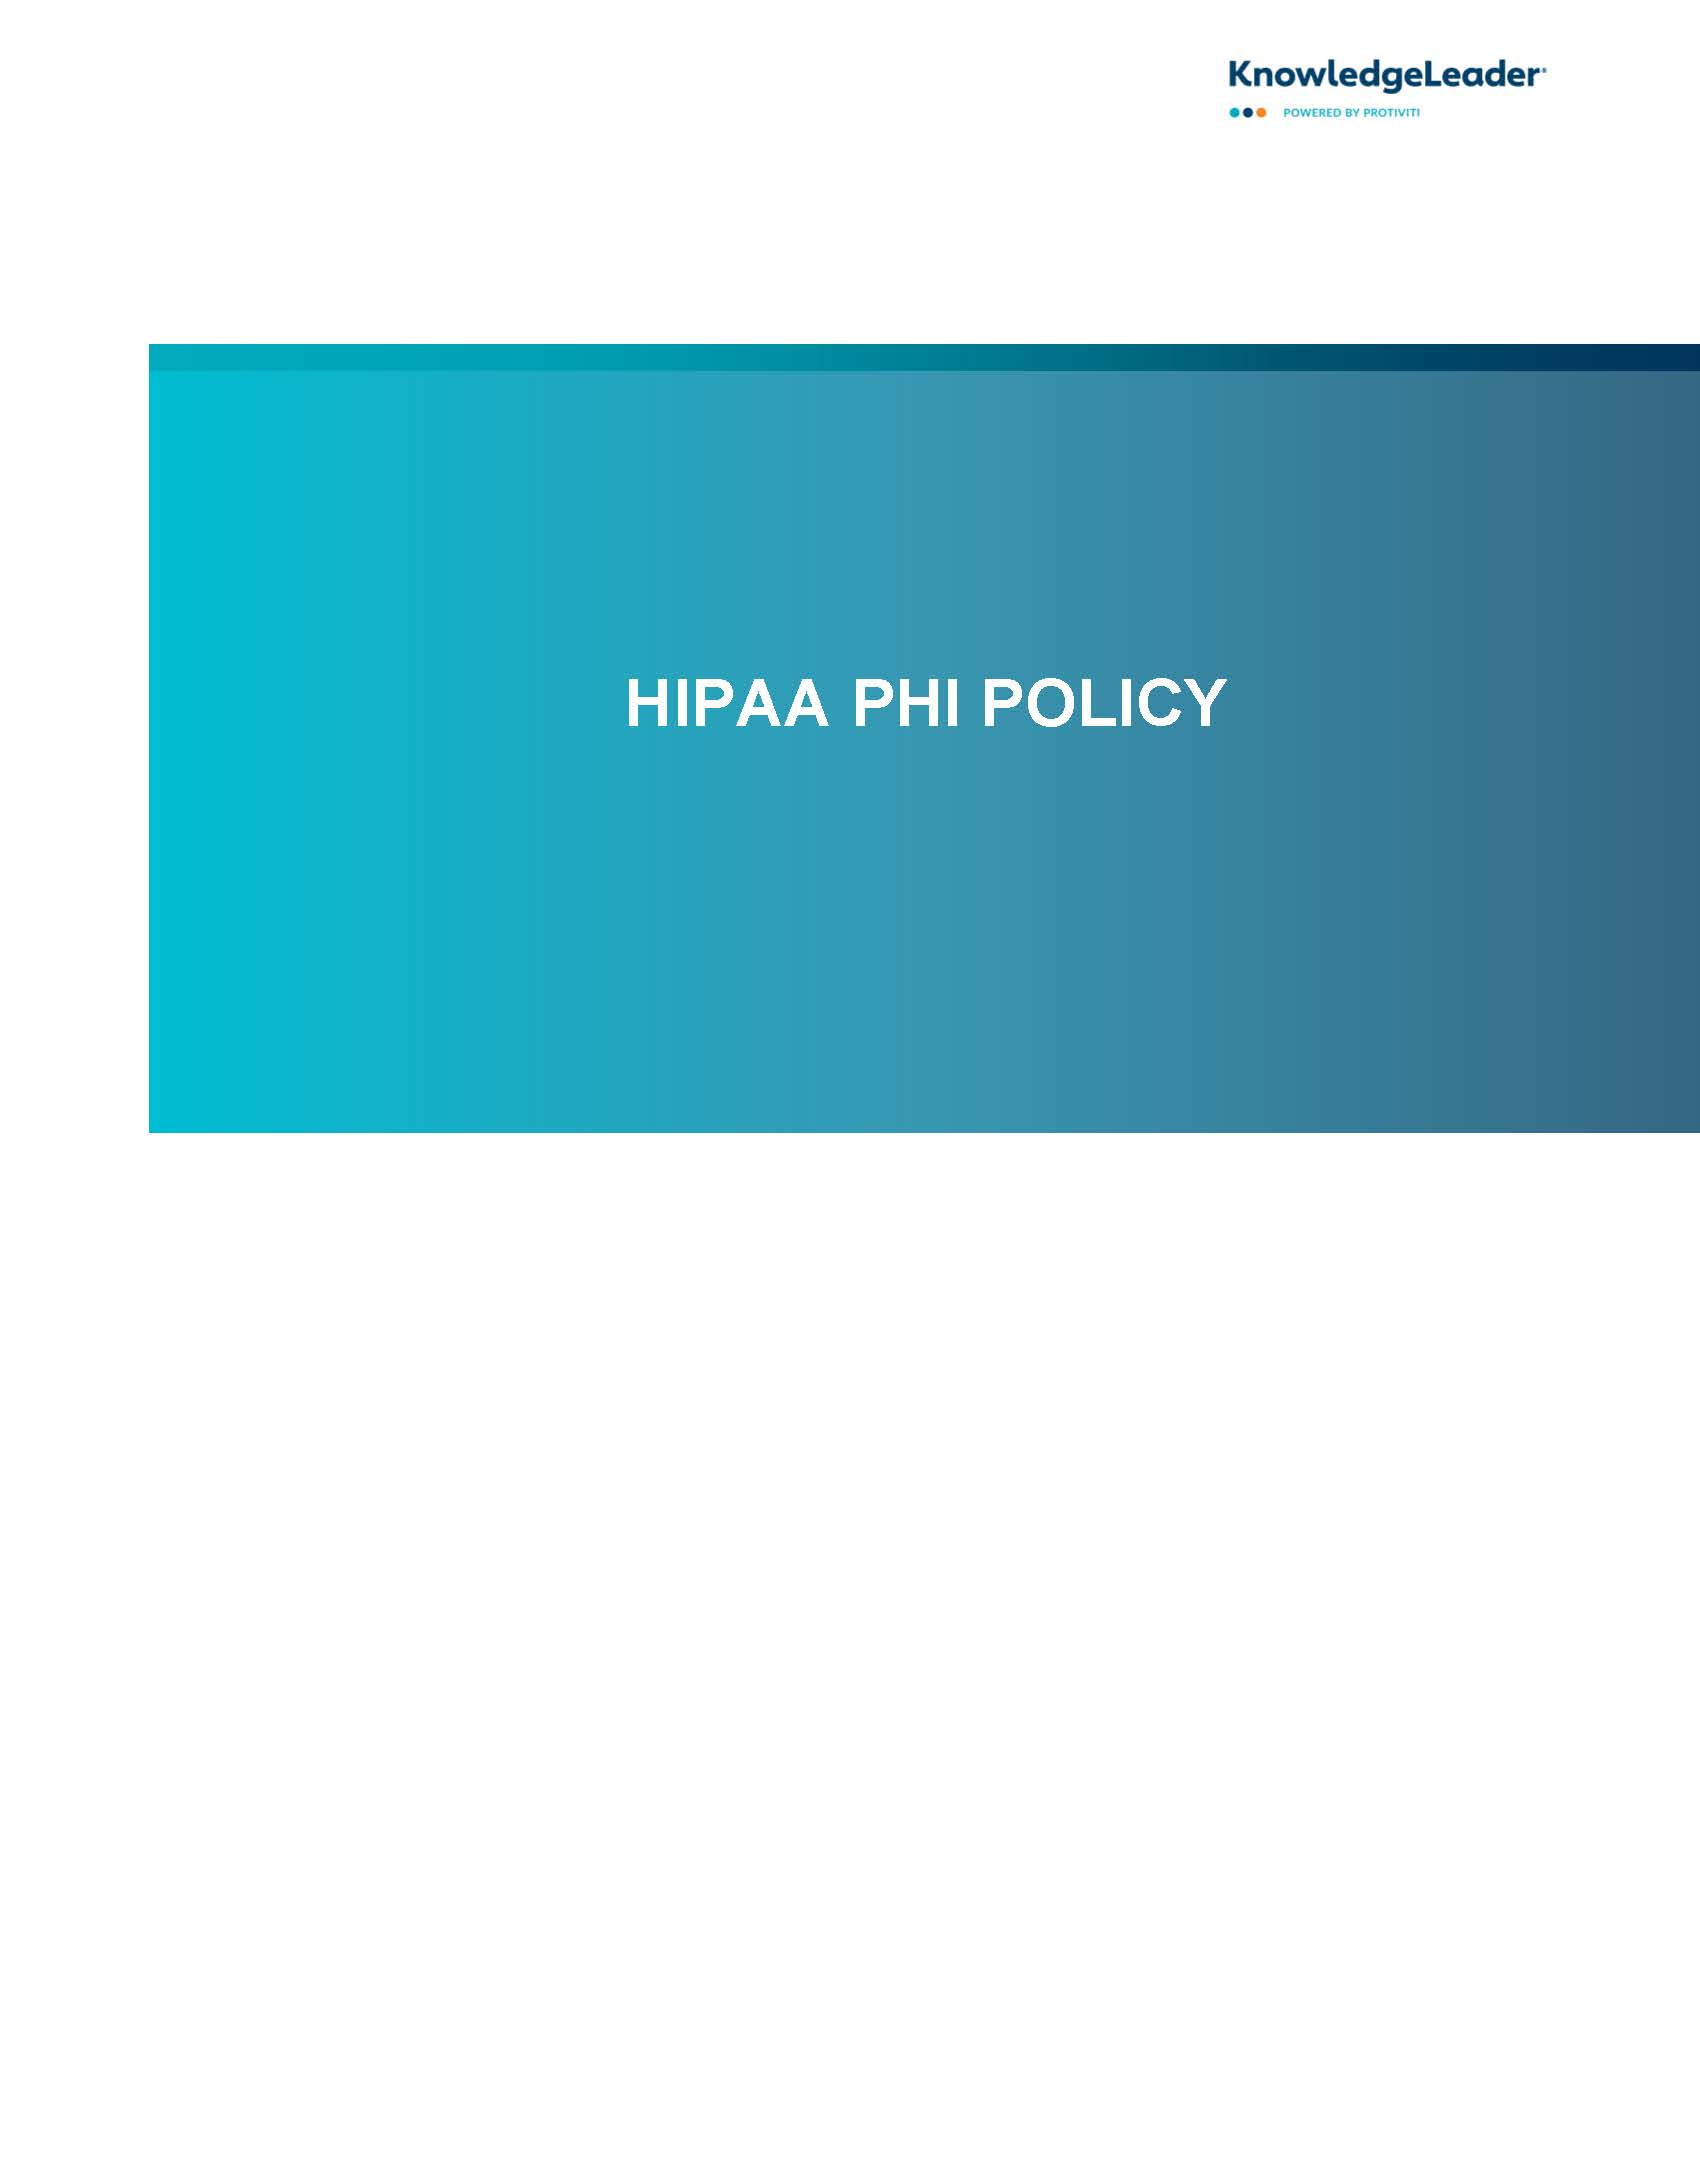 HIPAA PHI Policy